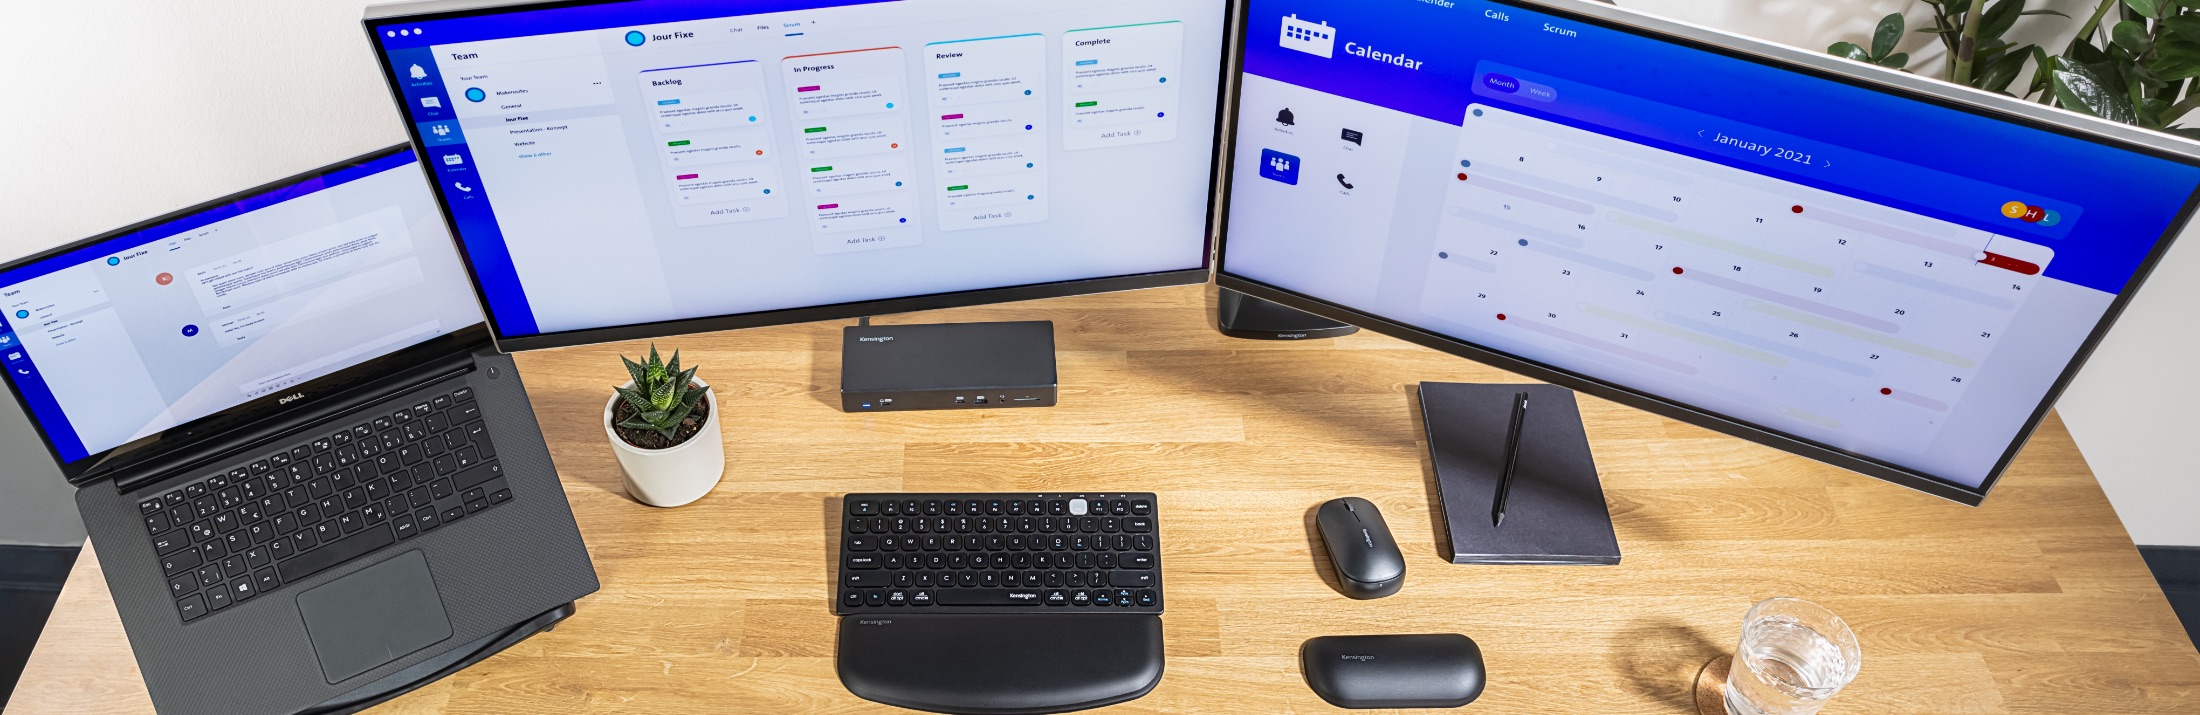 Desktop with Kensington keyboard, wrist rest, mouse, and docking station